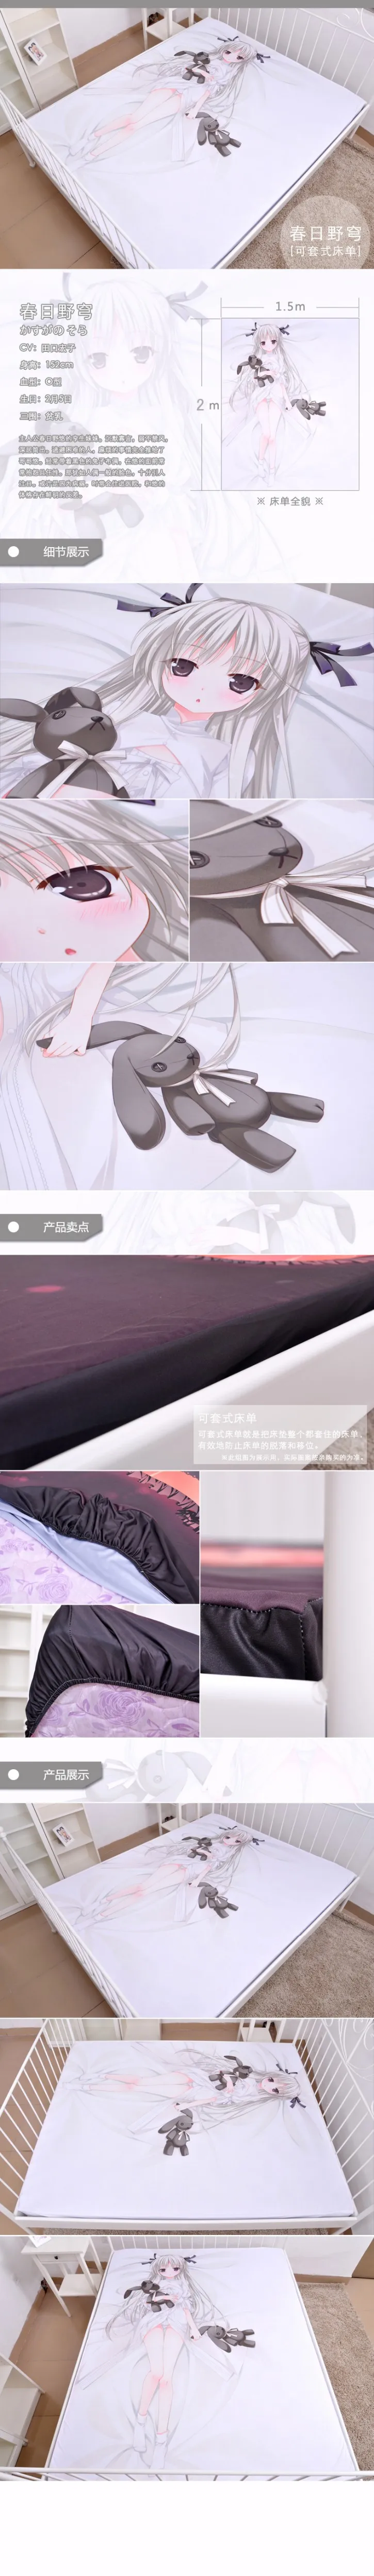 Японское аниме мультфильм yosuganosora молочный шёлковый наматрасник простыня Встроенная крышка покрывало столешница № 0020